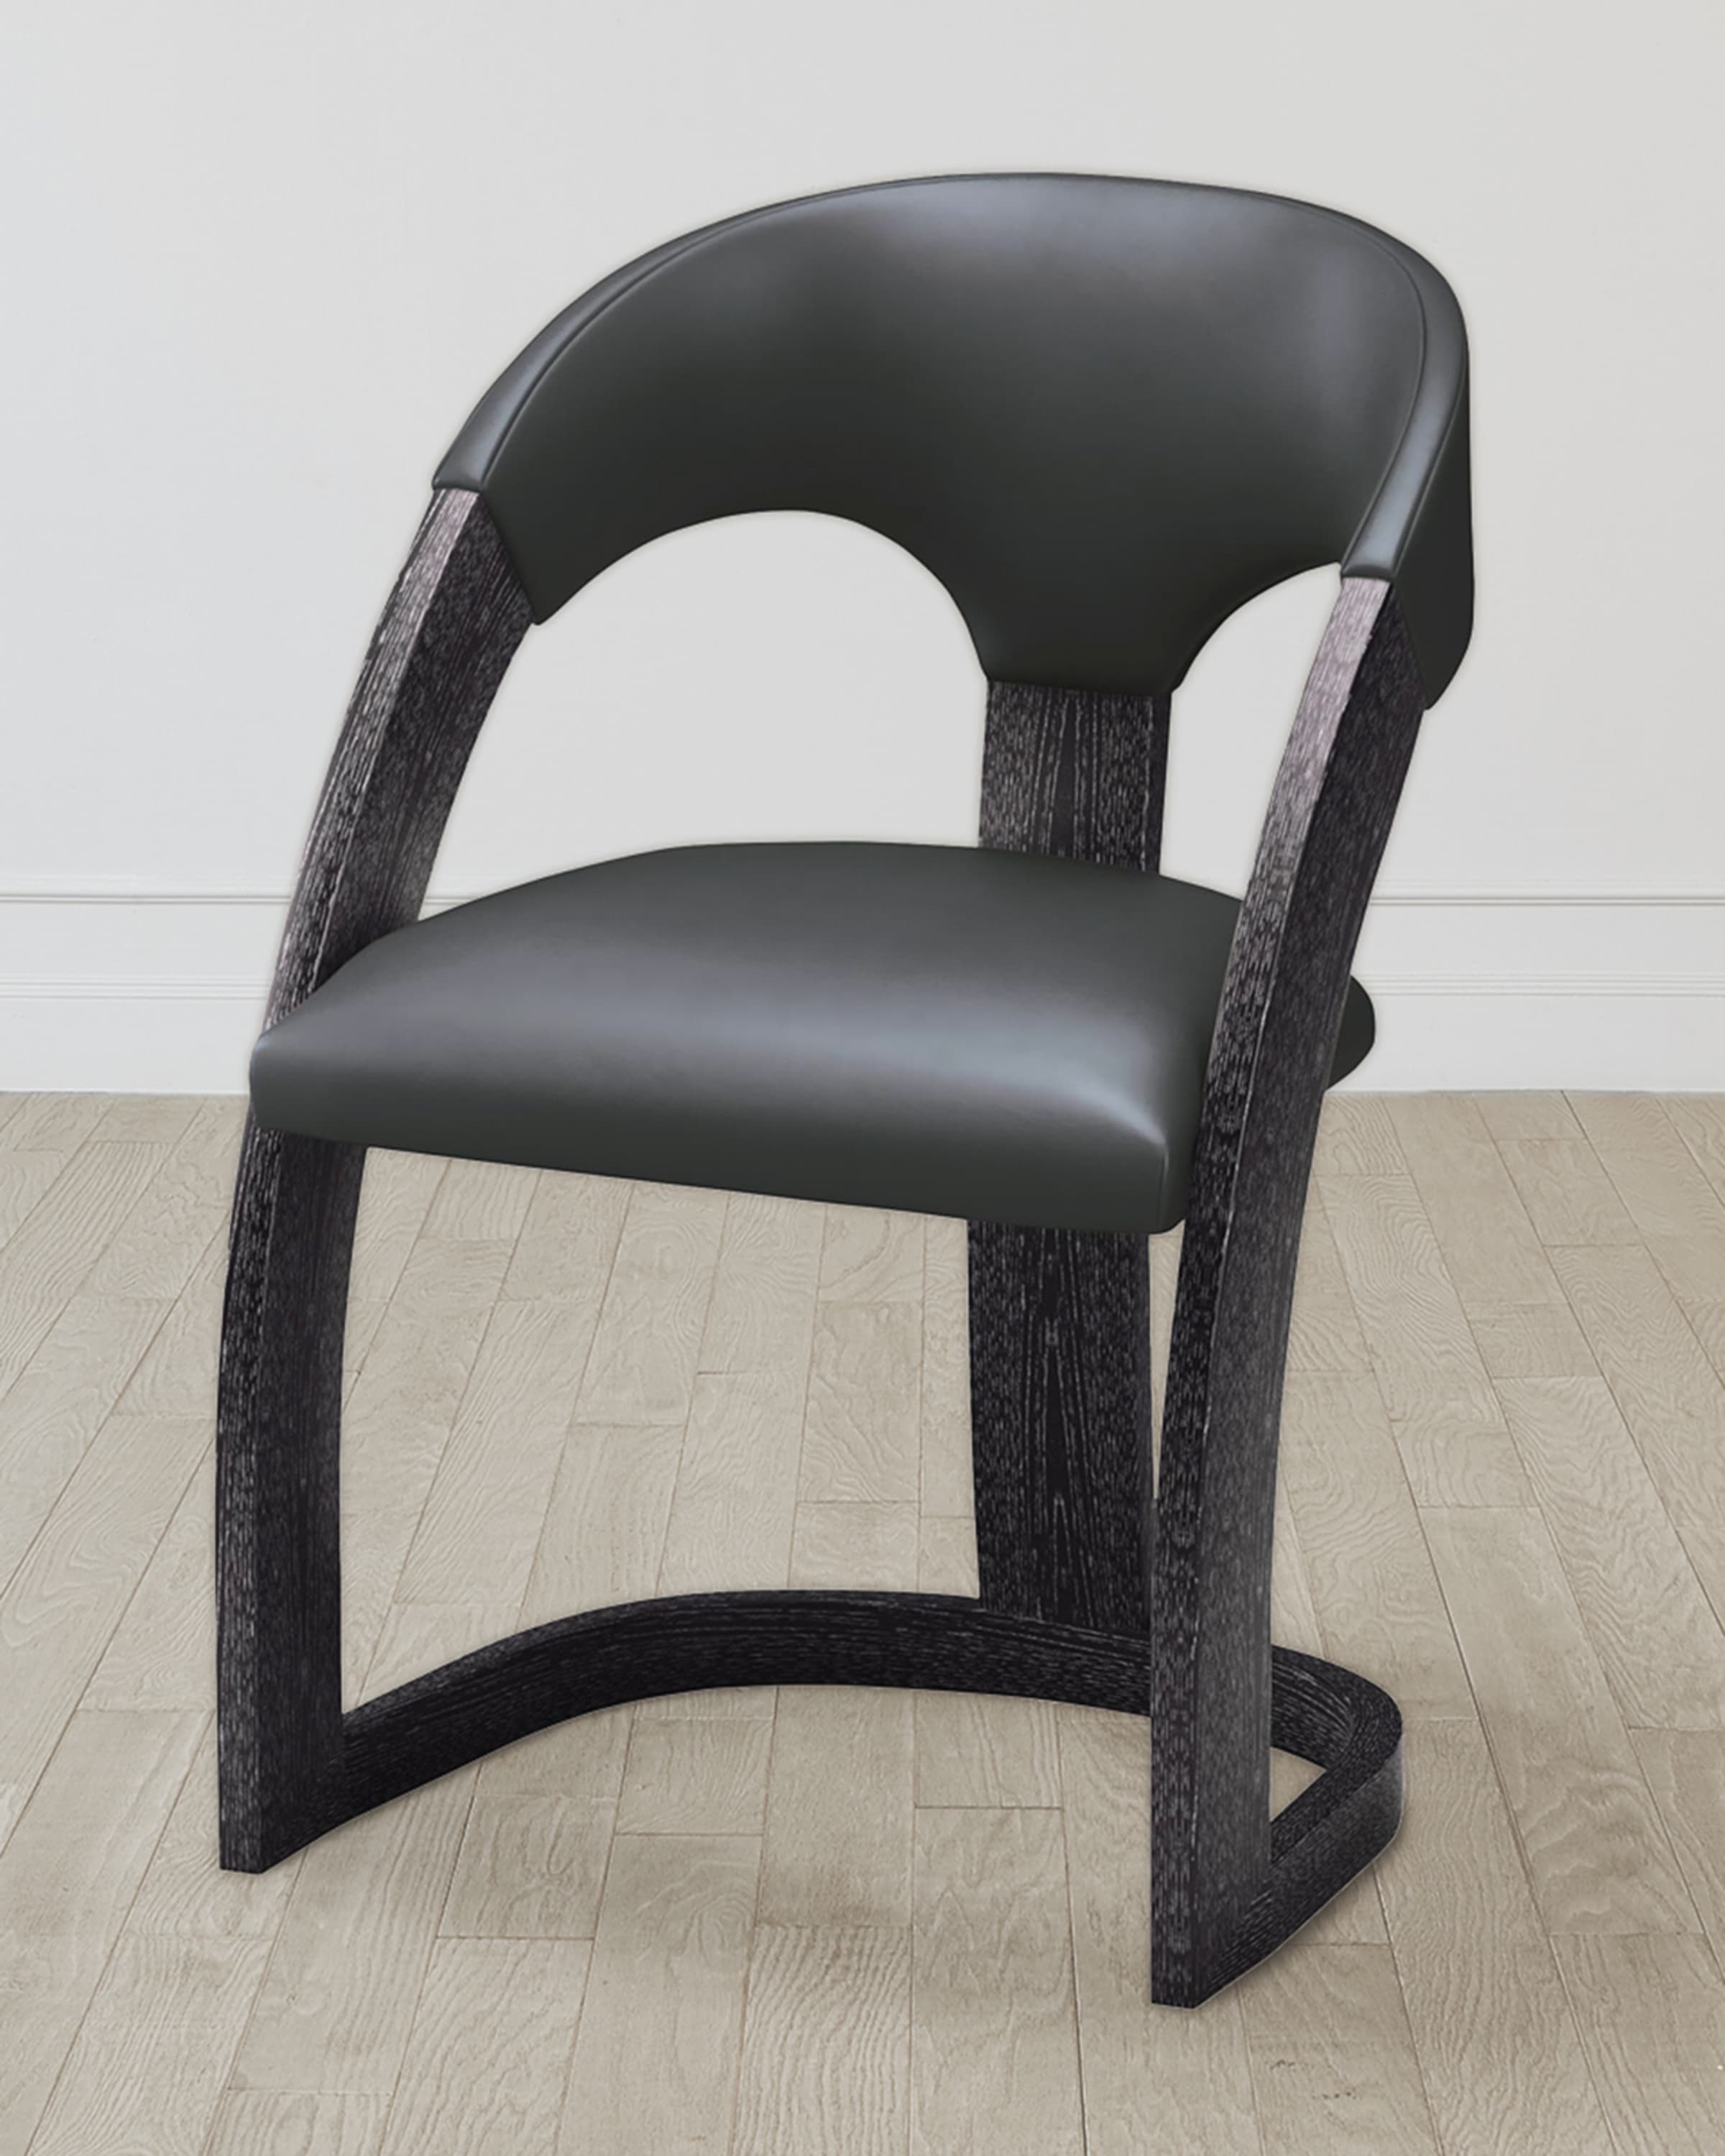 William D Scott Delia Ebony Cerused/Graphite Chair